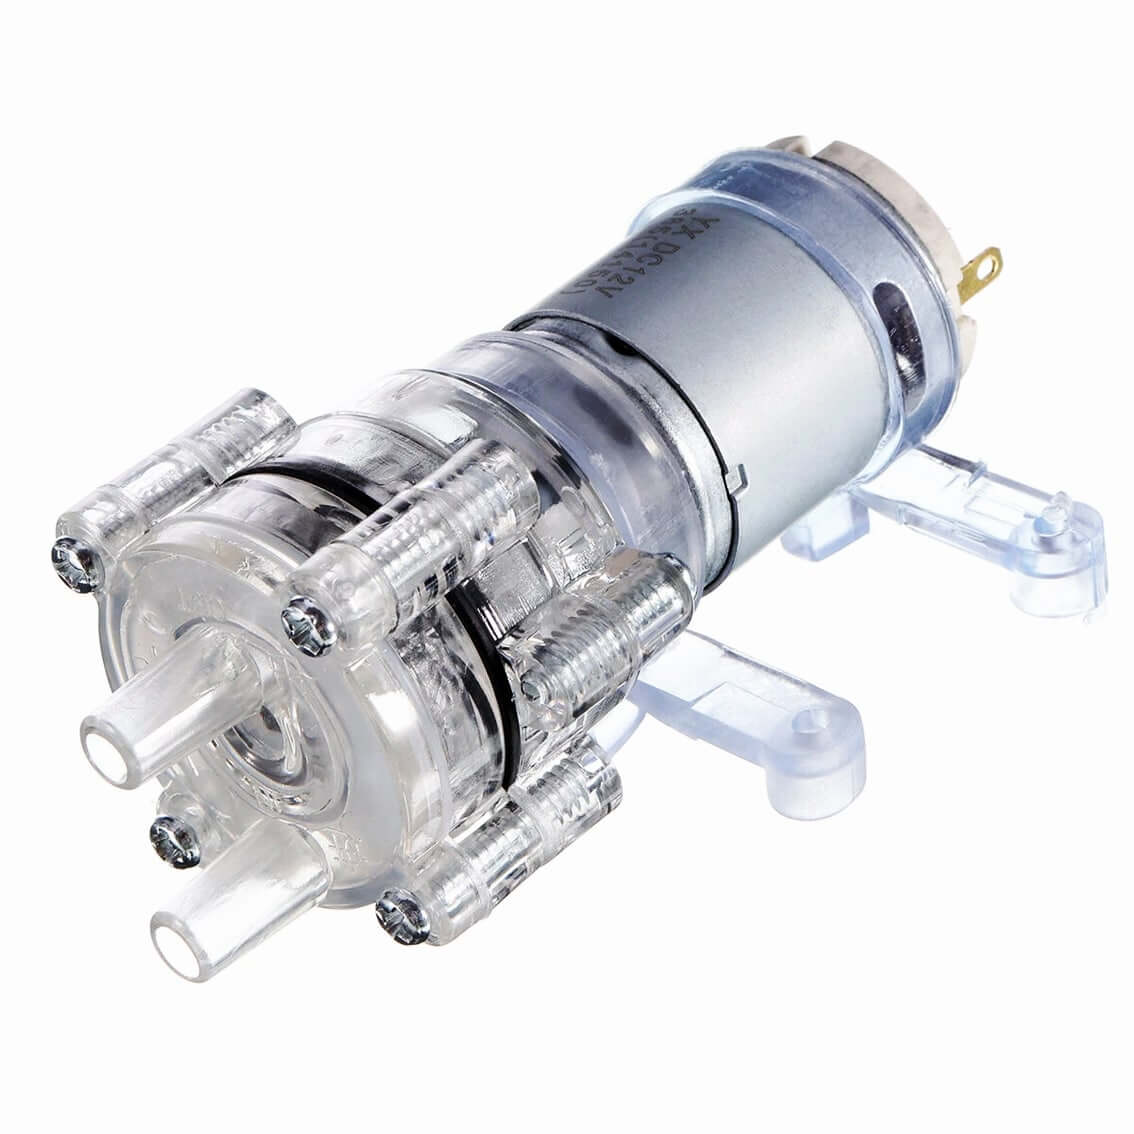 Mini Bomba de Agua Sumergible - 3-6 VDC - 120L/H - Electronilab